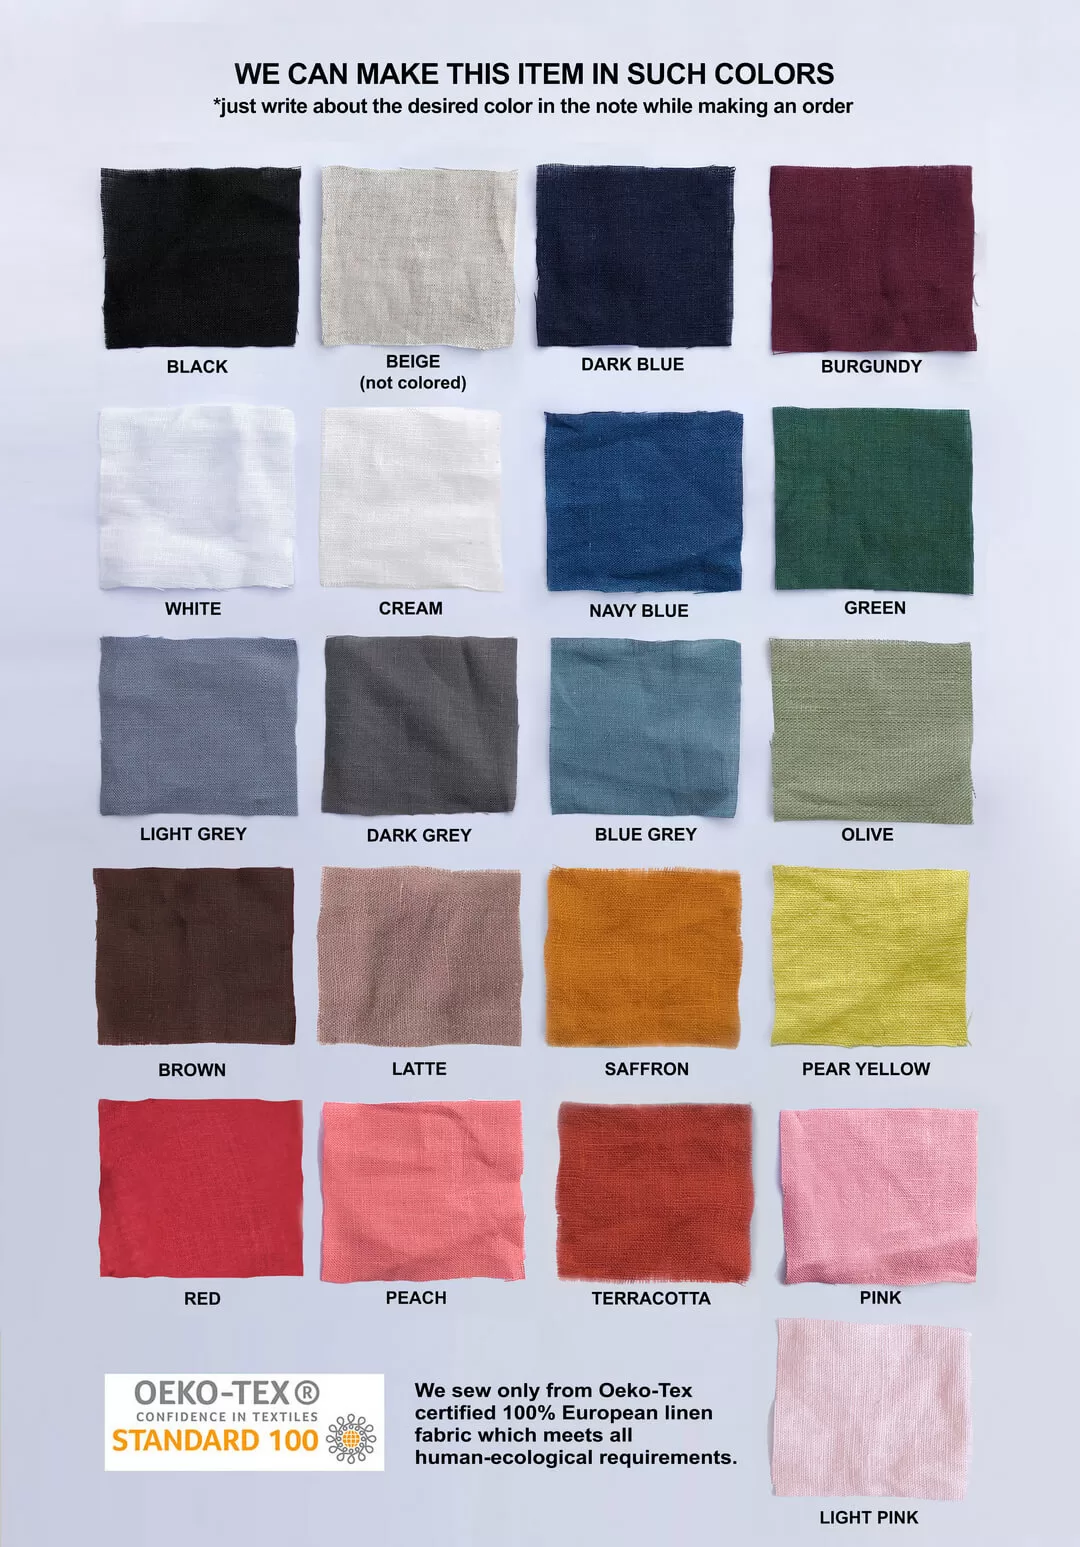 Organic Linen Underwear - Life-Giving Linen